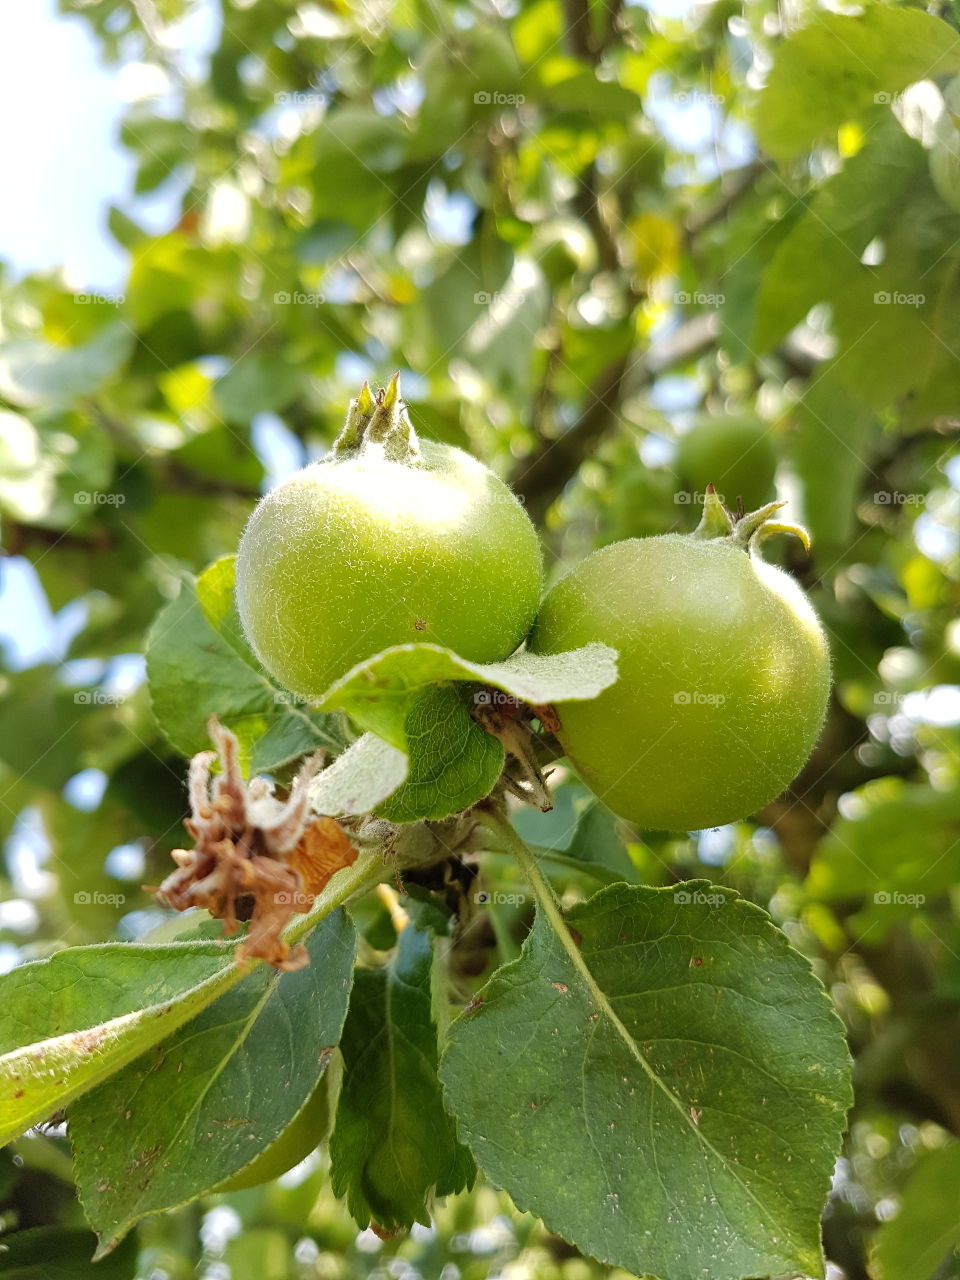 Apple, tree